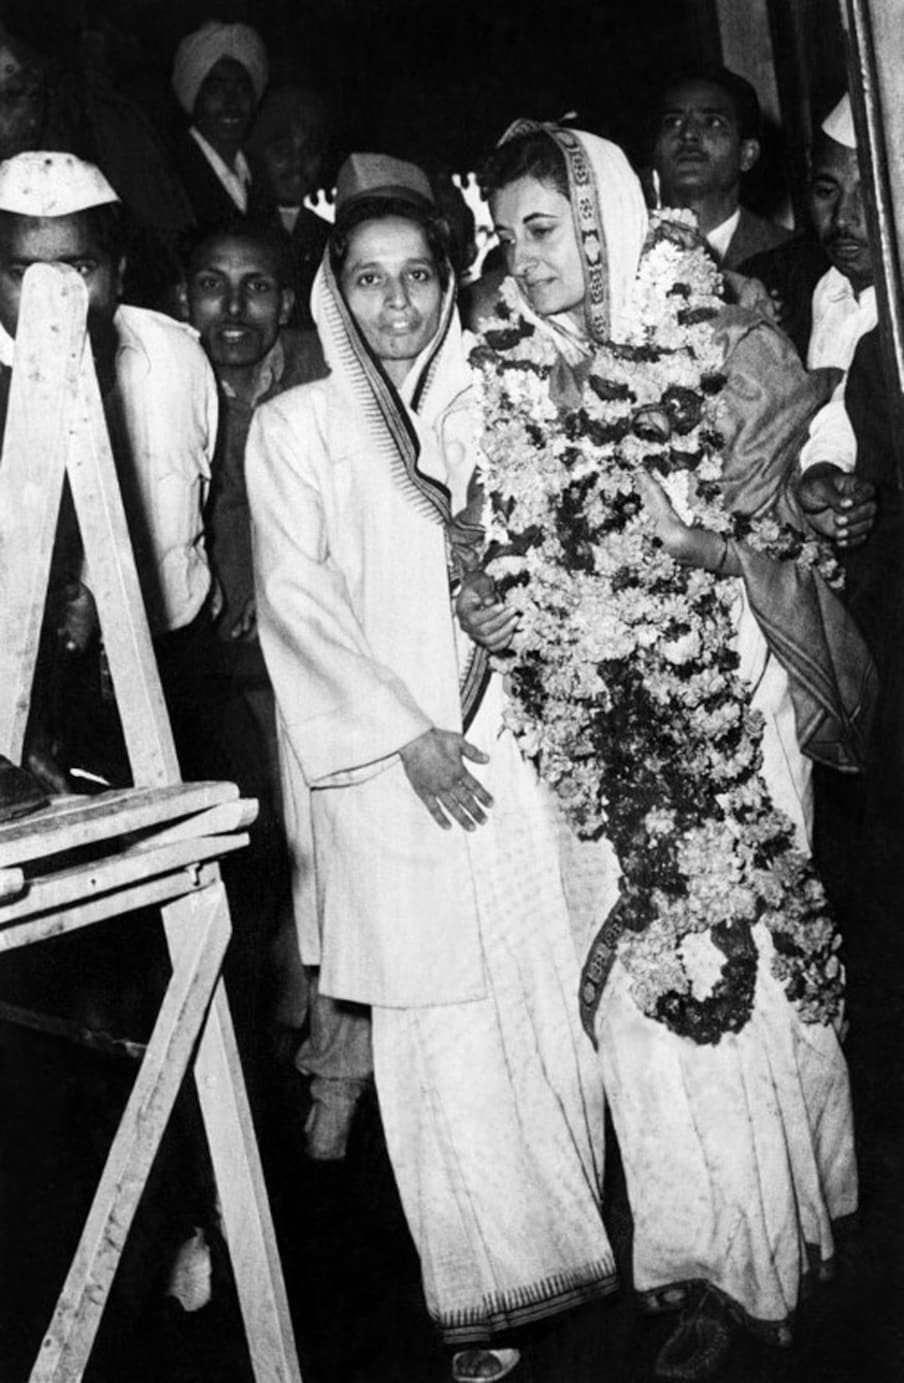  1959లో భారత జాతీయ కాంగ్రెస్ట్ అధ్యక్షురాలిగా ఎన్నికైన ఇందిరా గాంధీ (Imgae: AFP)